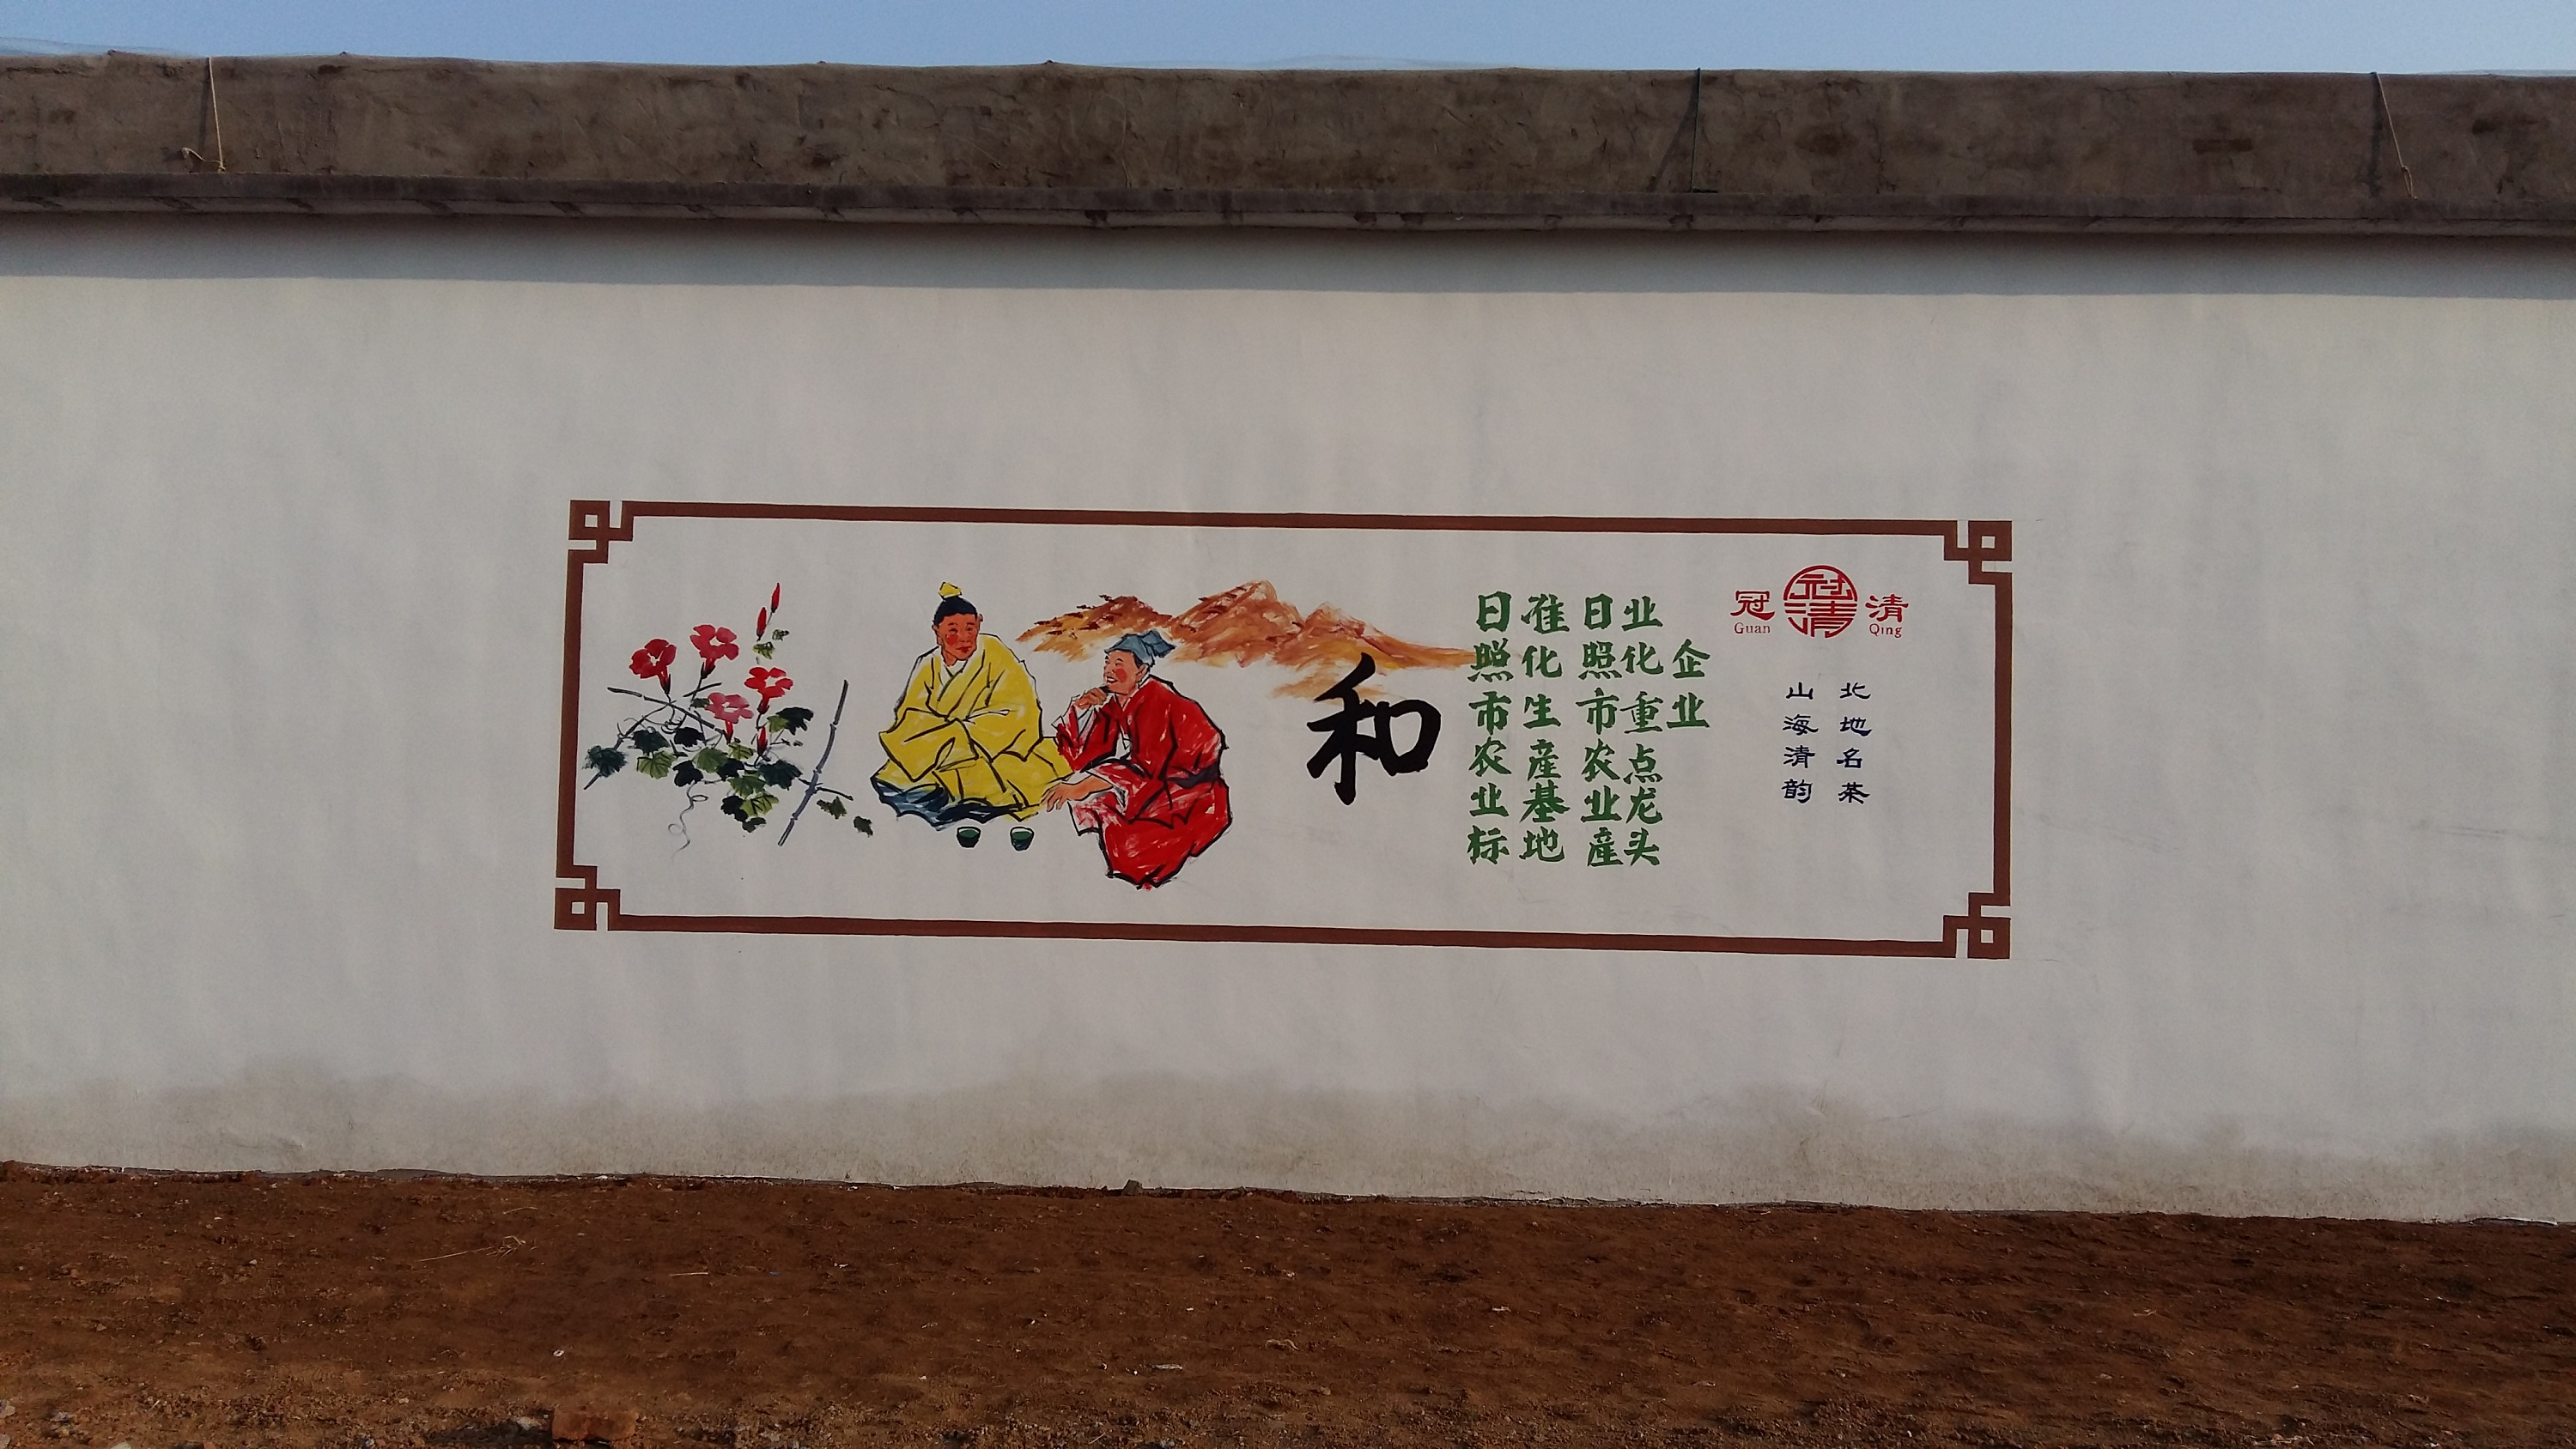 日照农村文化墙,壁画,手绘墙,幼儿园彩绘,墙体彩绘